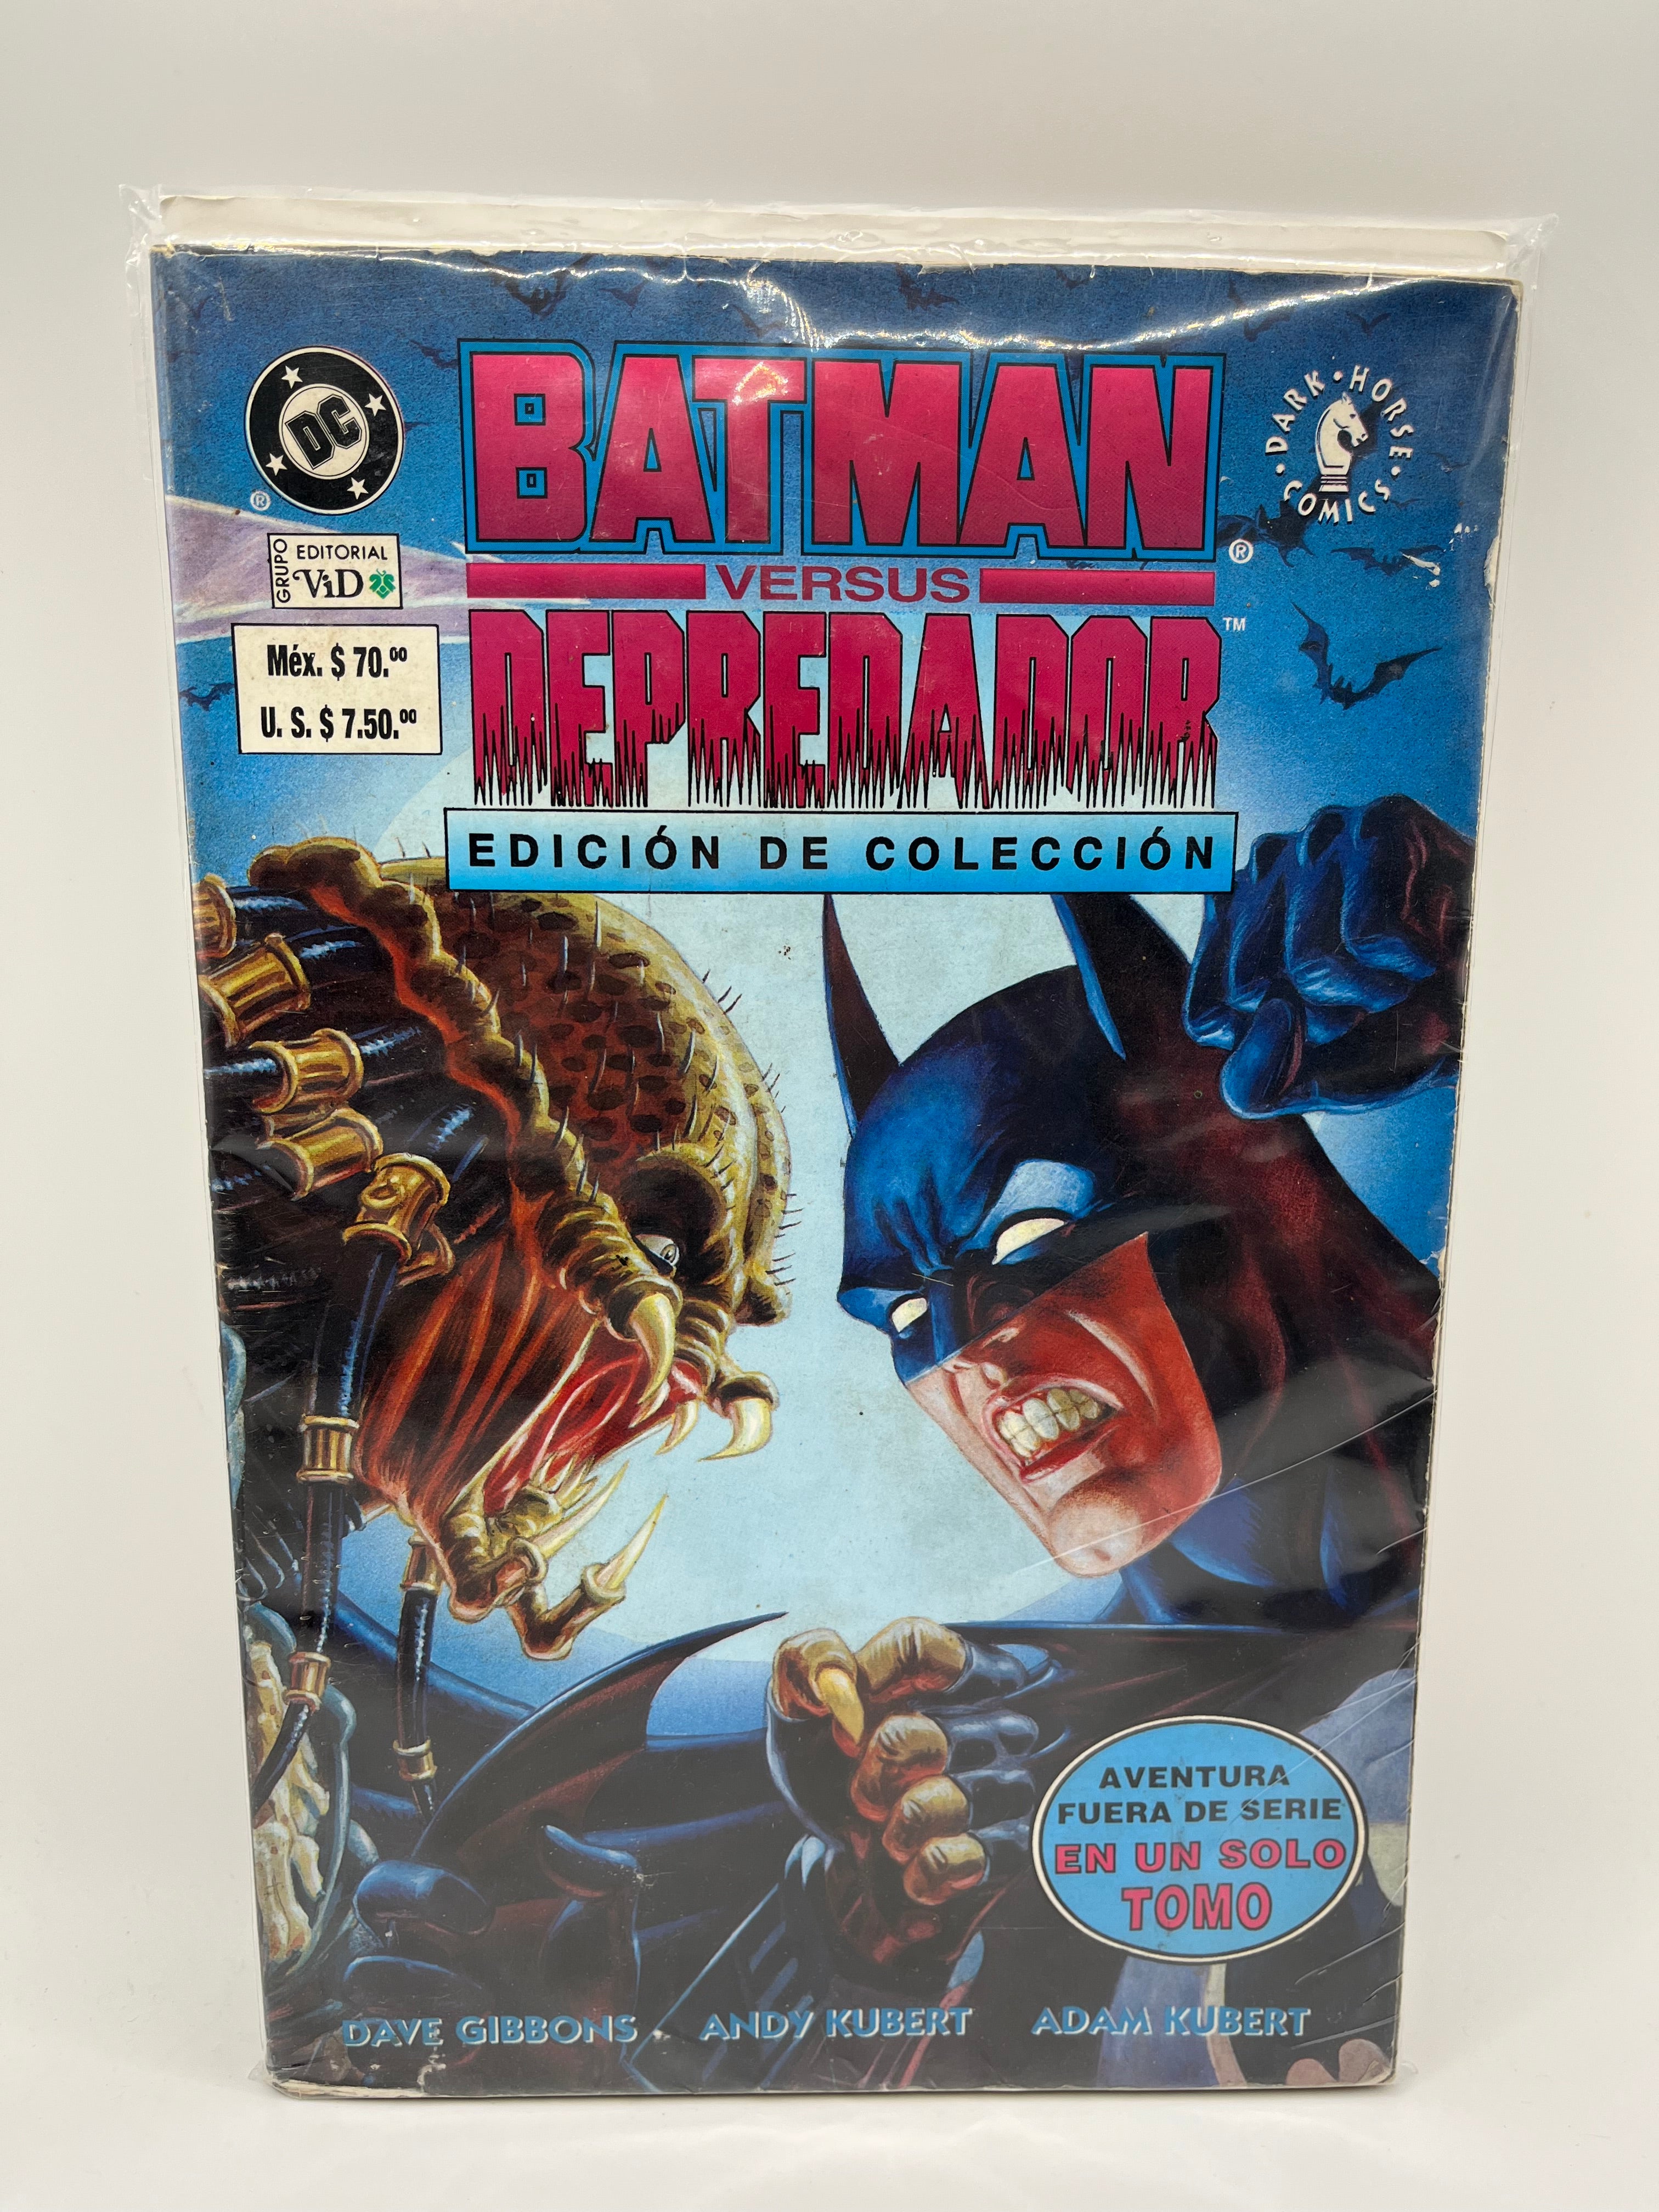 Batman Versus Depredador Edición de Colección DC Cómics Dark Horse Editorial ViD Español